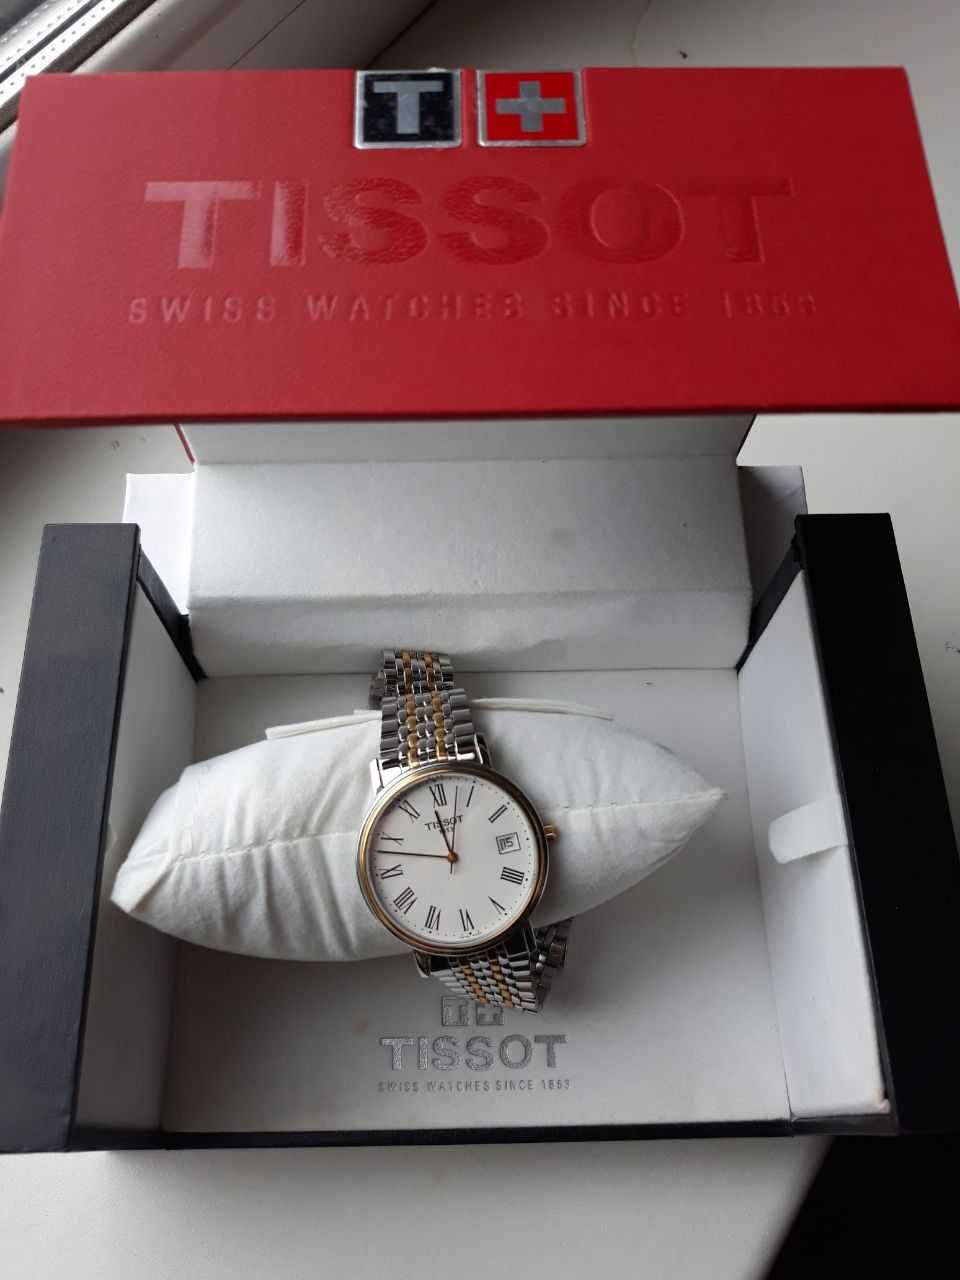 Мужские часы Tissot в оригинальной упаковке (не носились)